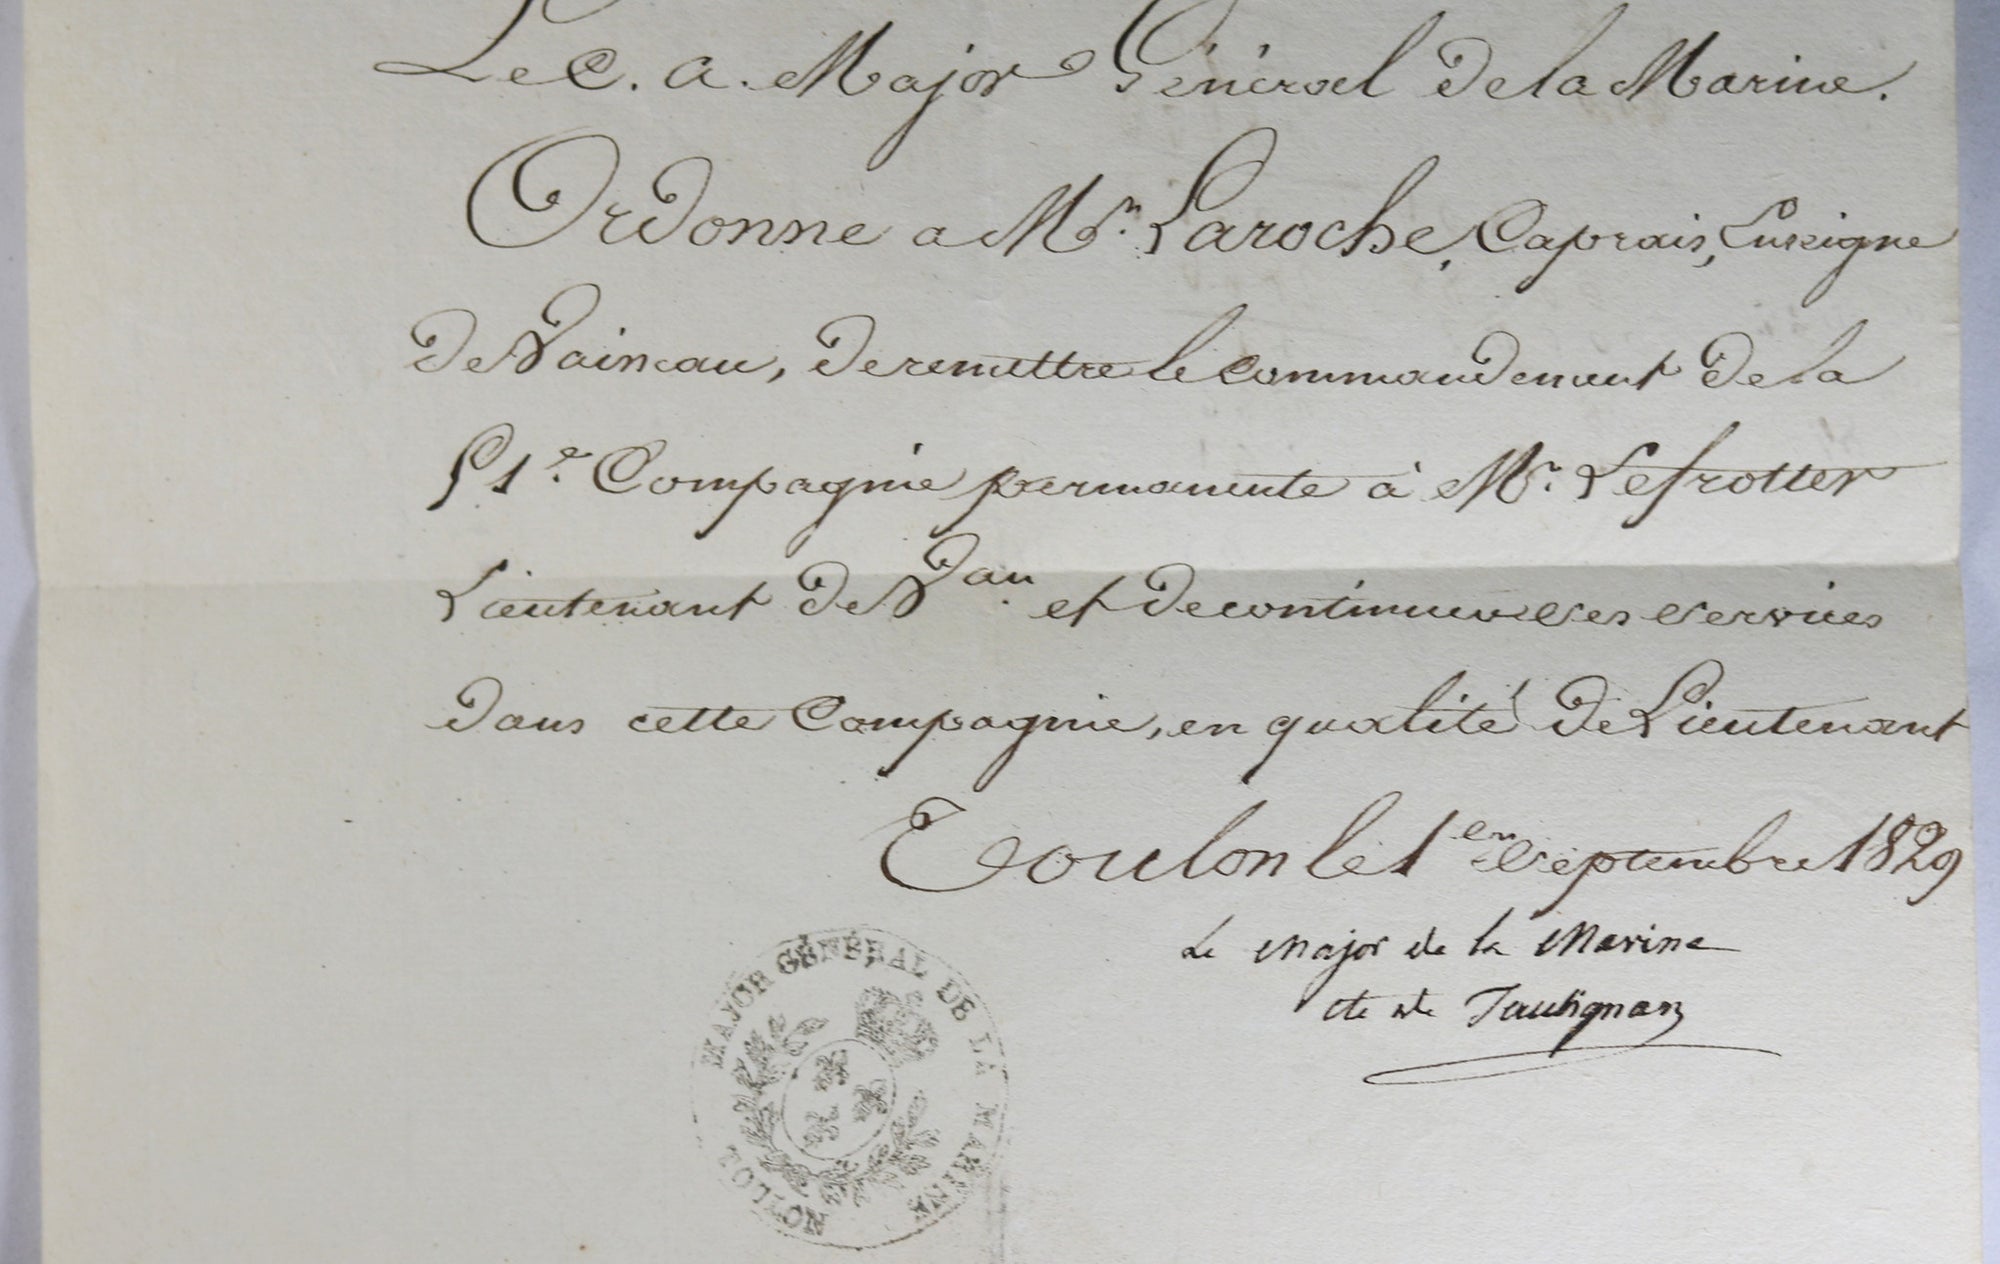 1829 lettre du Major Général Port de Toulon - remise de commandement